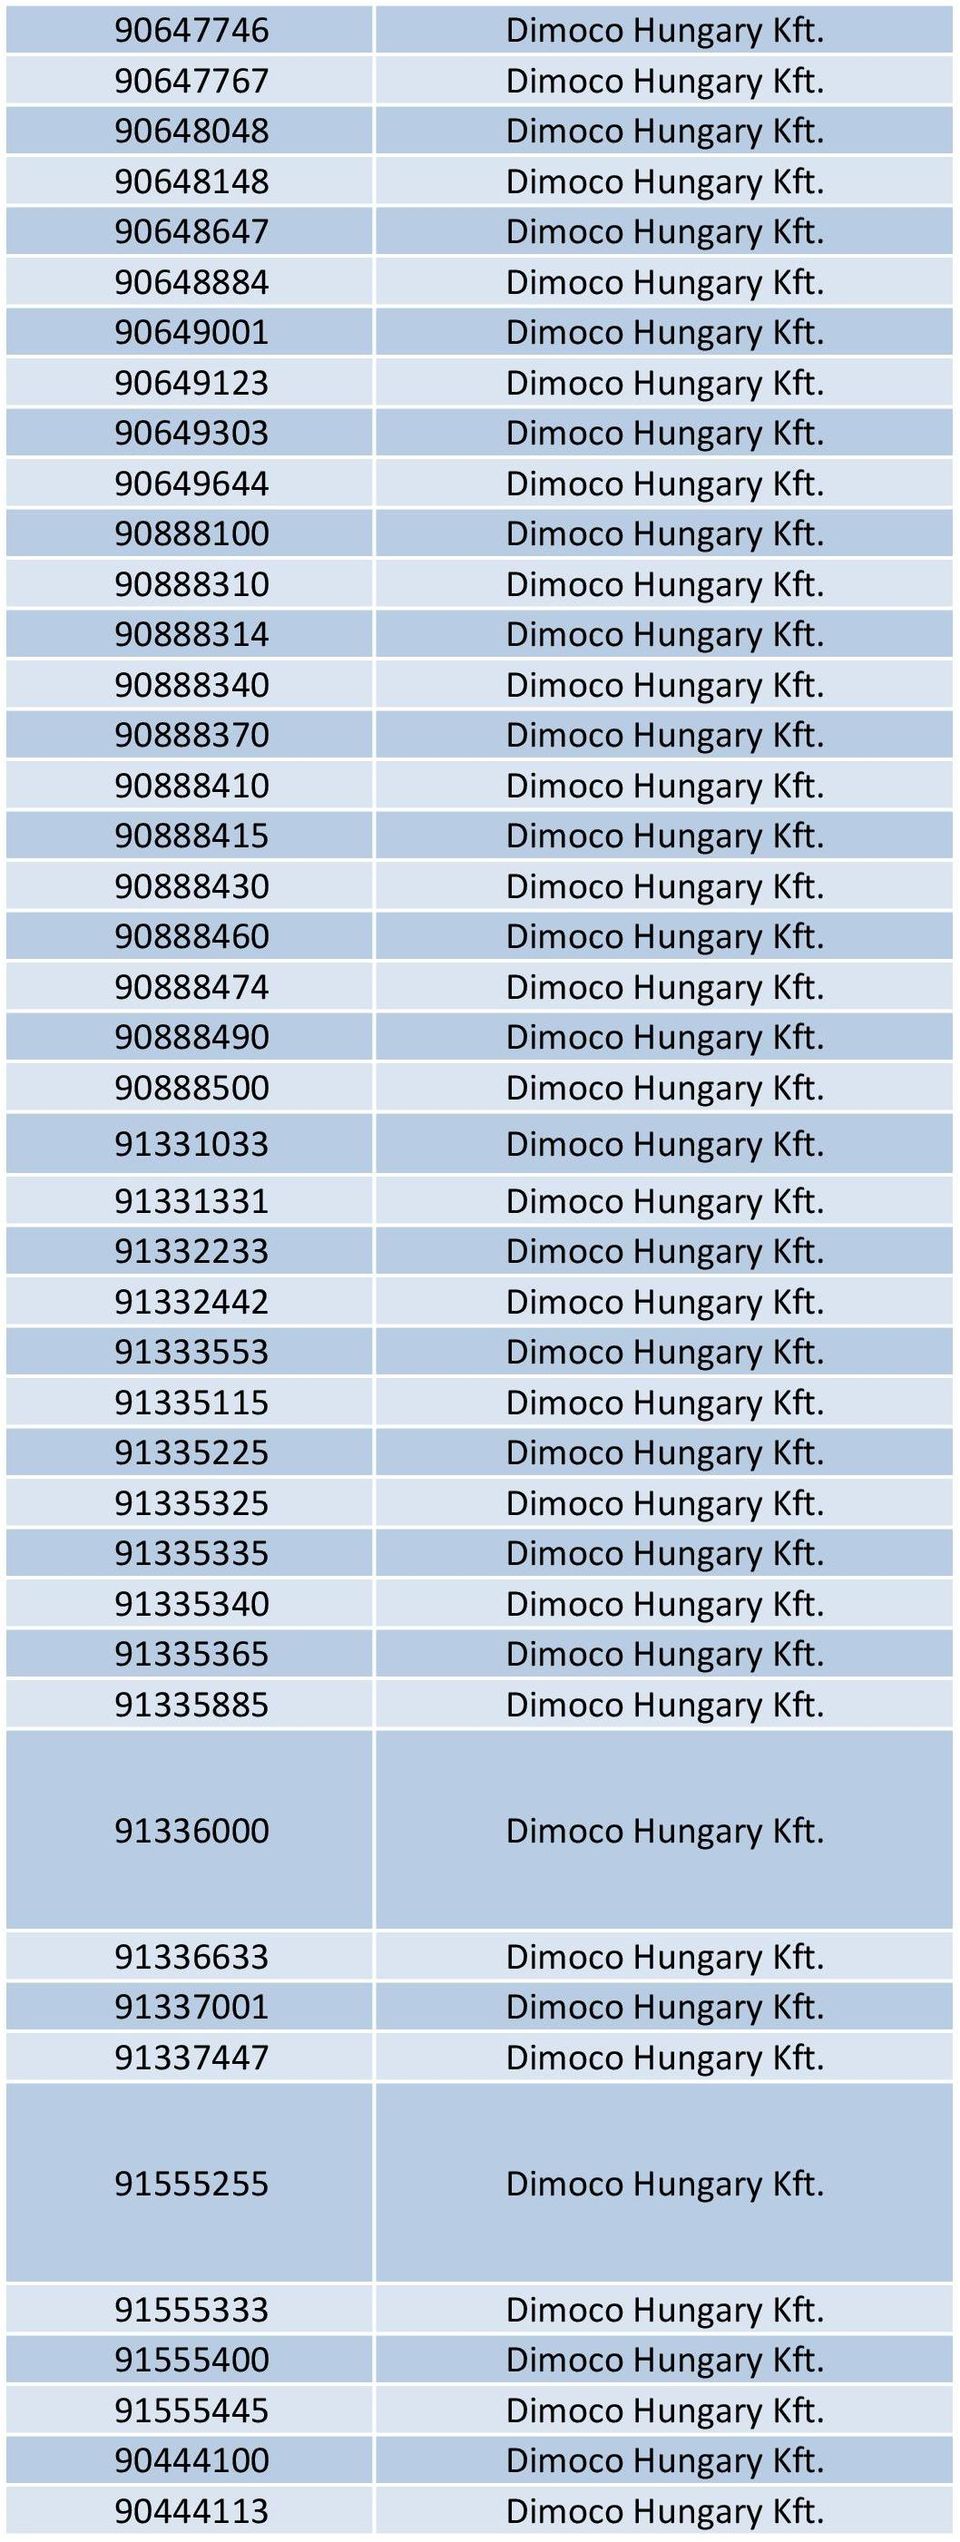 90888314 Dimoco Hungary Kft. 90888340 Dimoco Hungary Kft. 90888370 Dimoco Hungary Kft. 90888410 Dimoco Hungary Kft. 90888415 Dimoco Hungary Kft. 90888430 Dimoco Hungary Kft.